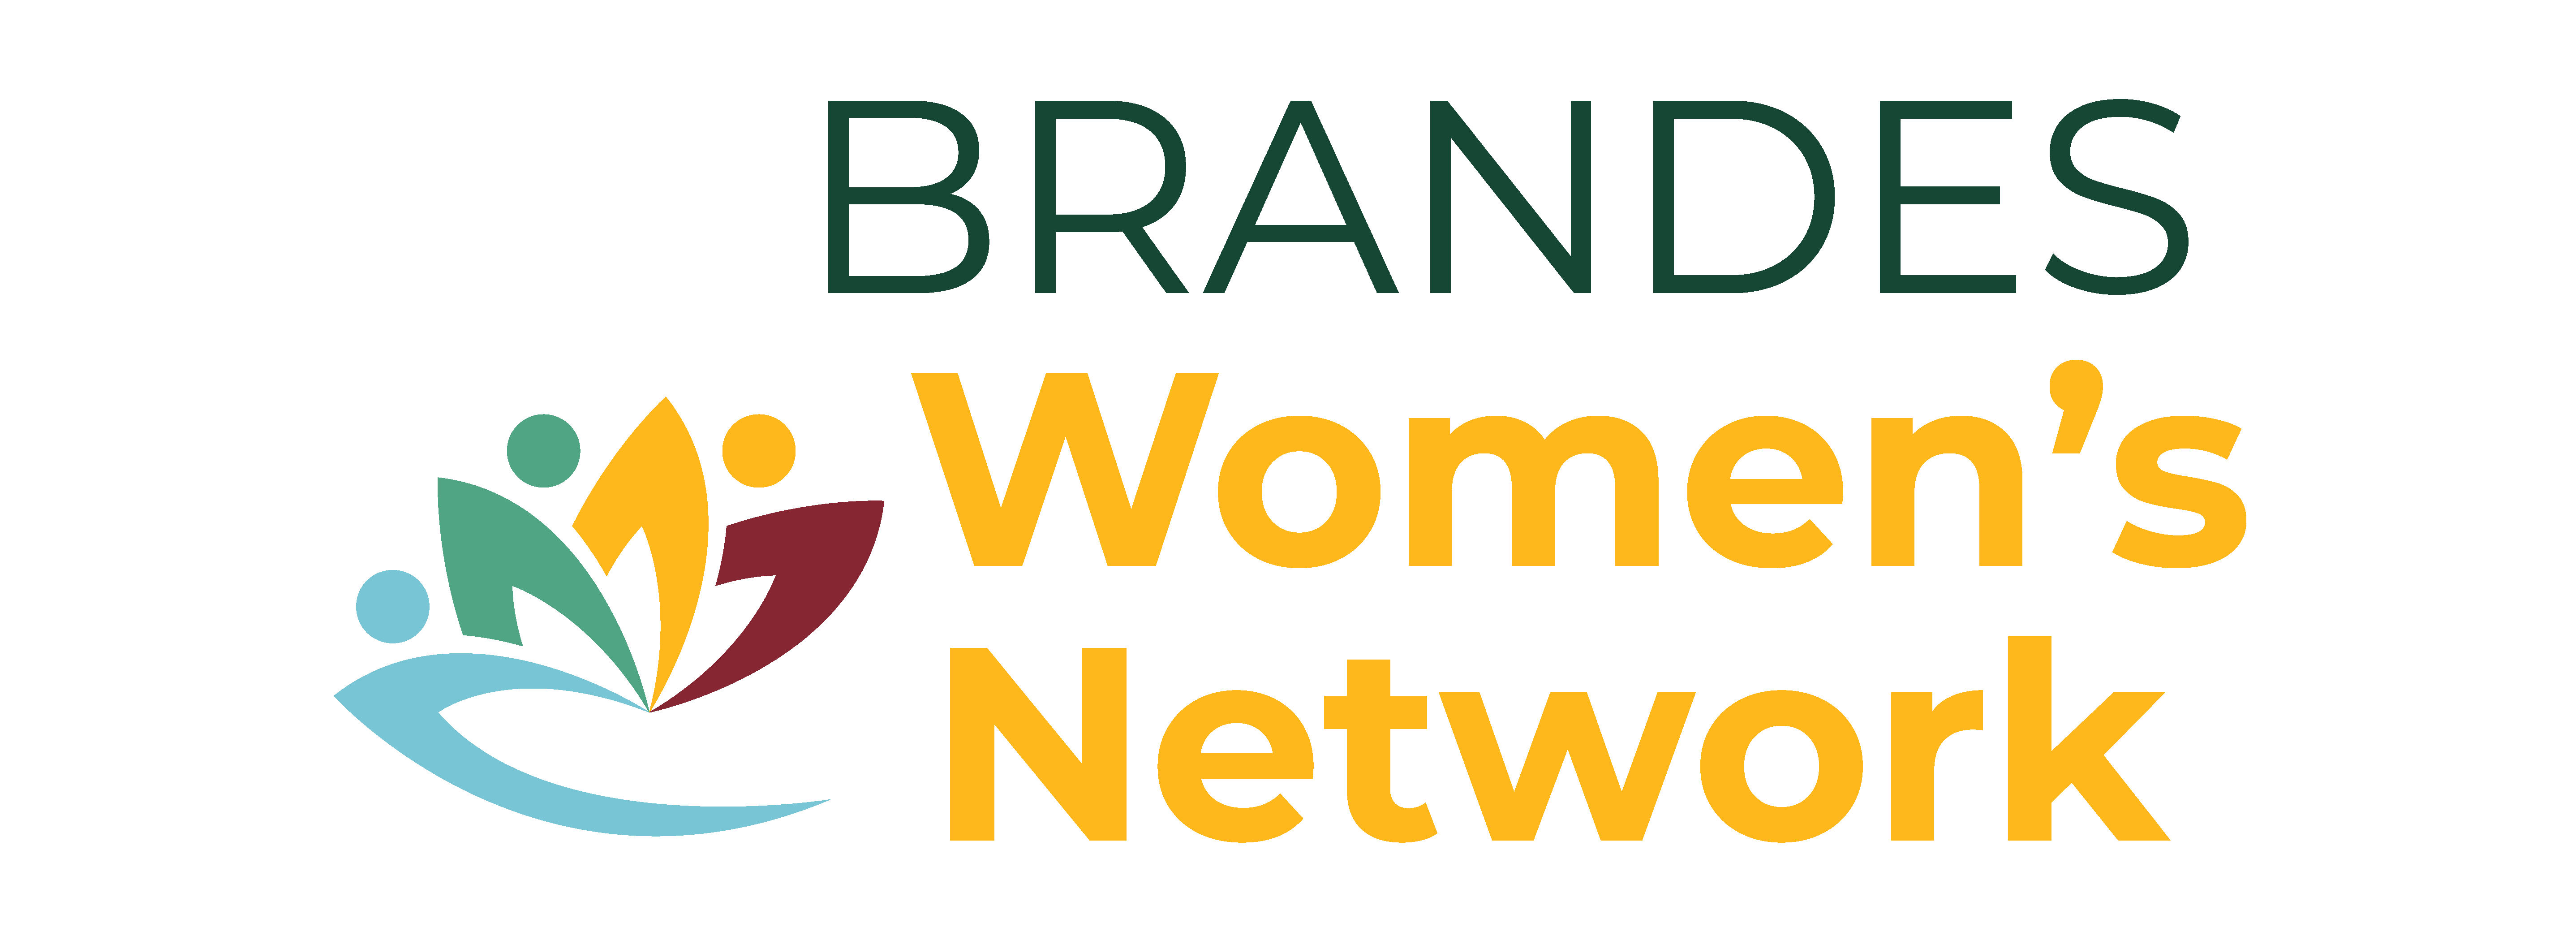 Brandes Women's Network